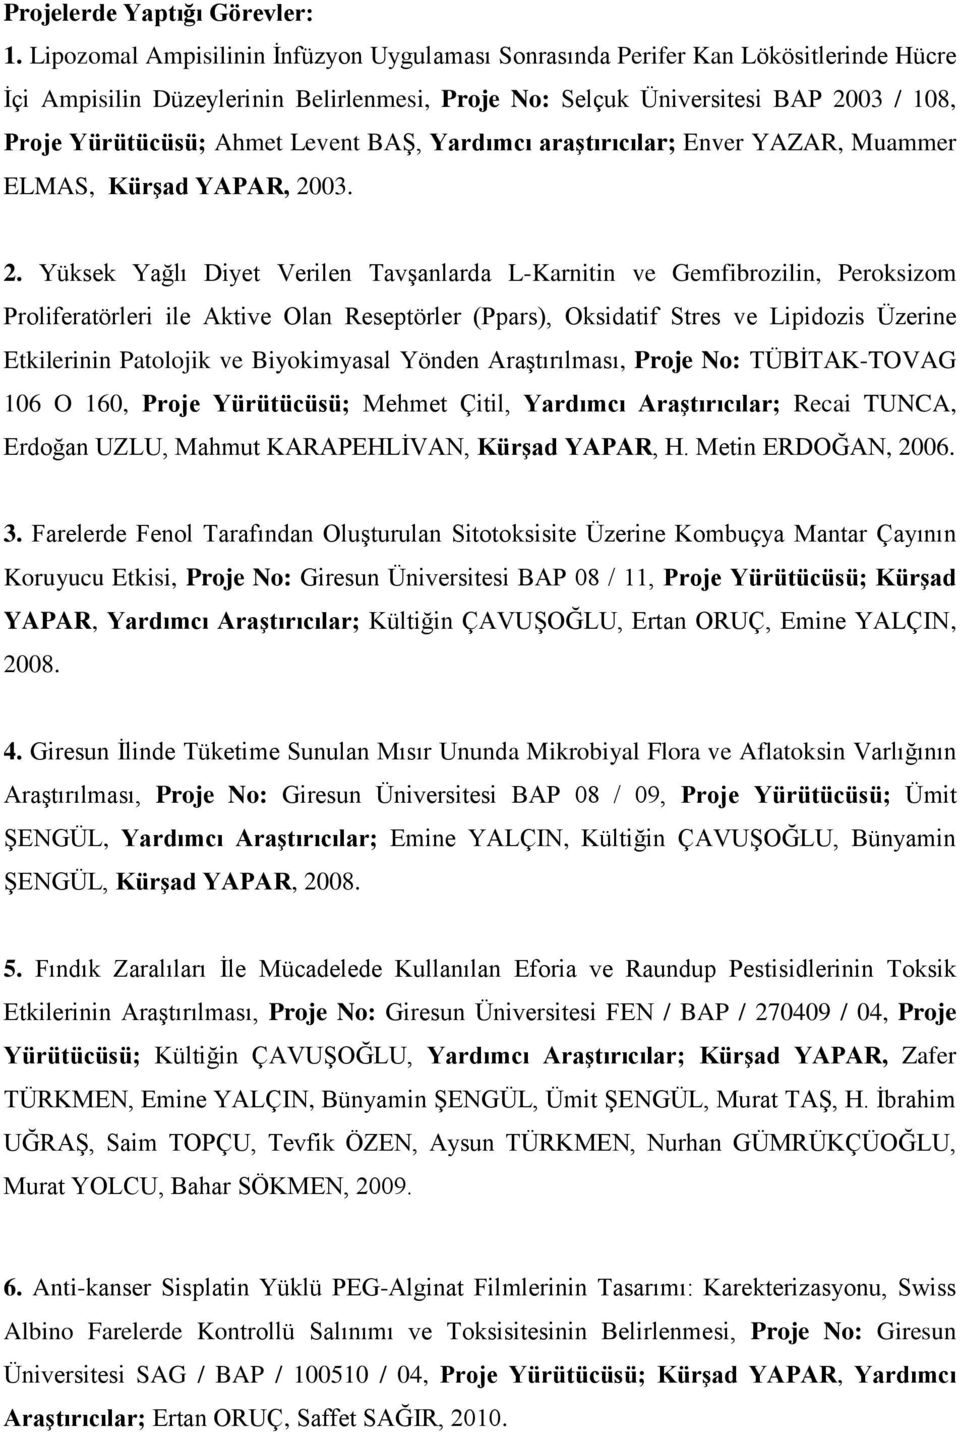 Levent BAġ, Yardımcı araştırıcılar; Enver YAZAR, Muammer ELMAS, Kürşad YAPAR, 20